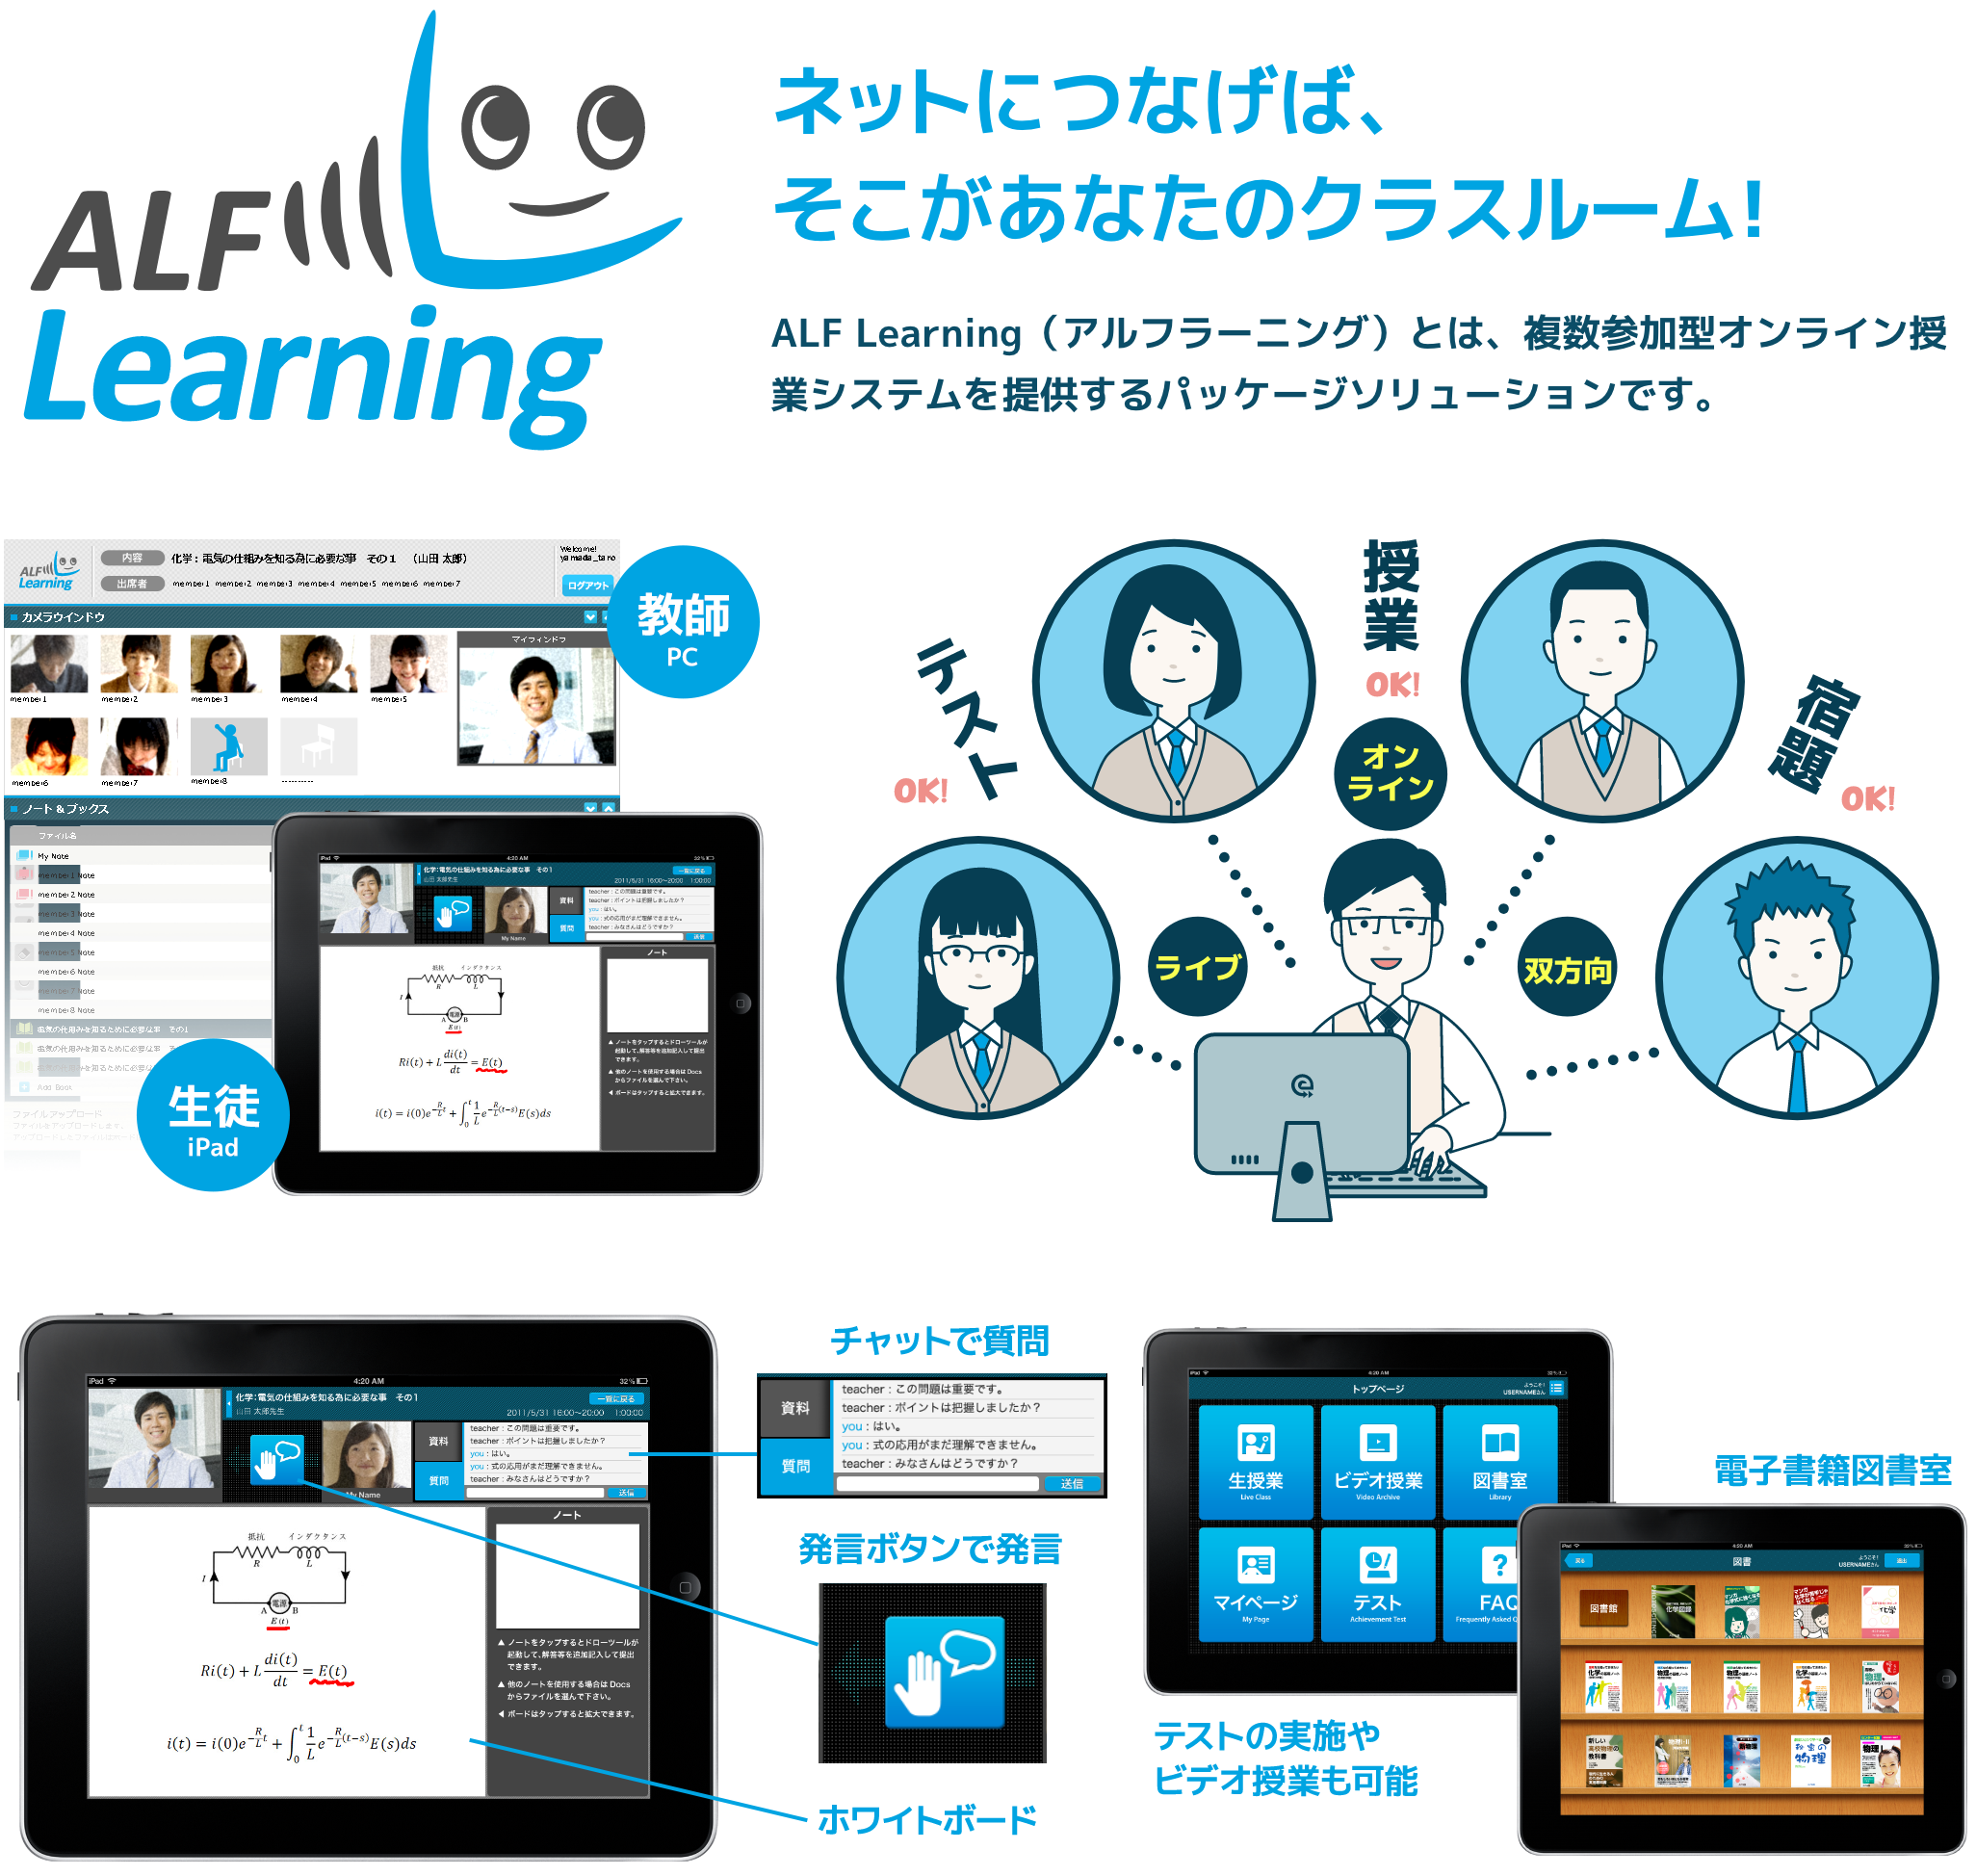 アルフラーニングロゴ
ネットにつなげば、そこがあなたのクラスルーム!
ALF Learning（アルフラーニング）とは、複数参加型オンライン授業システムを提供するパッケージソリューションです。
アルフラーニング画面・教師のPCと生徒のiPad
アルフラーニングで先生と生徒がオンラインでつながって授業をしているイラスト
アルフラーニング機能紹介
チャット・発言ボタン・ホワイトボード・テスト・ビデオ授業・電子書籍図書室